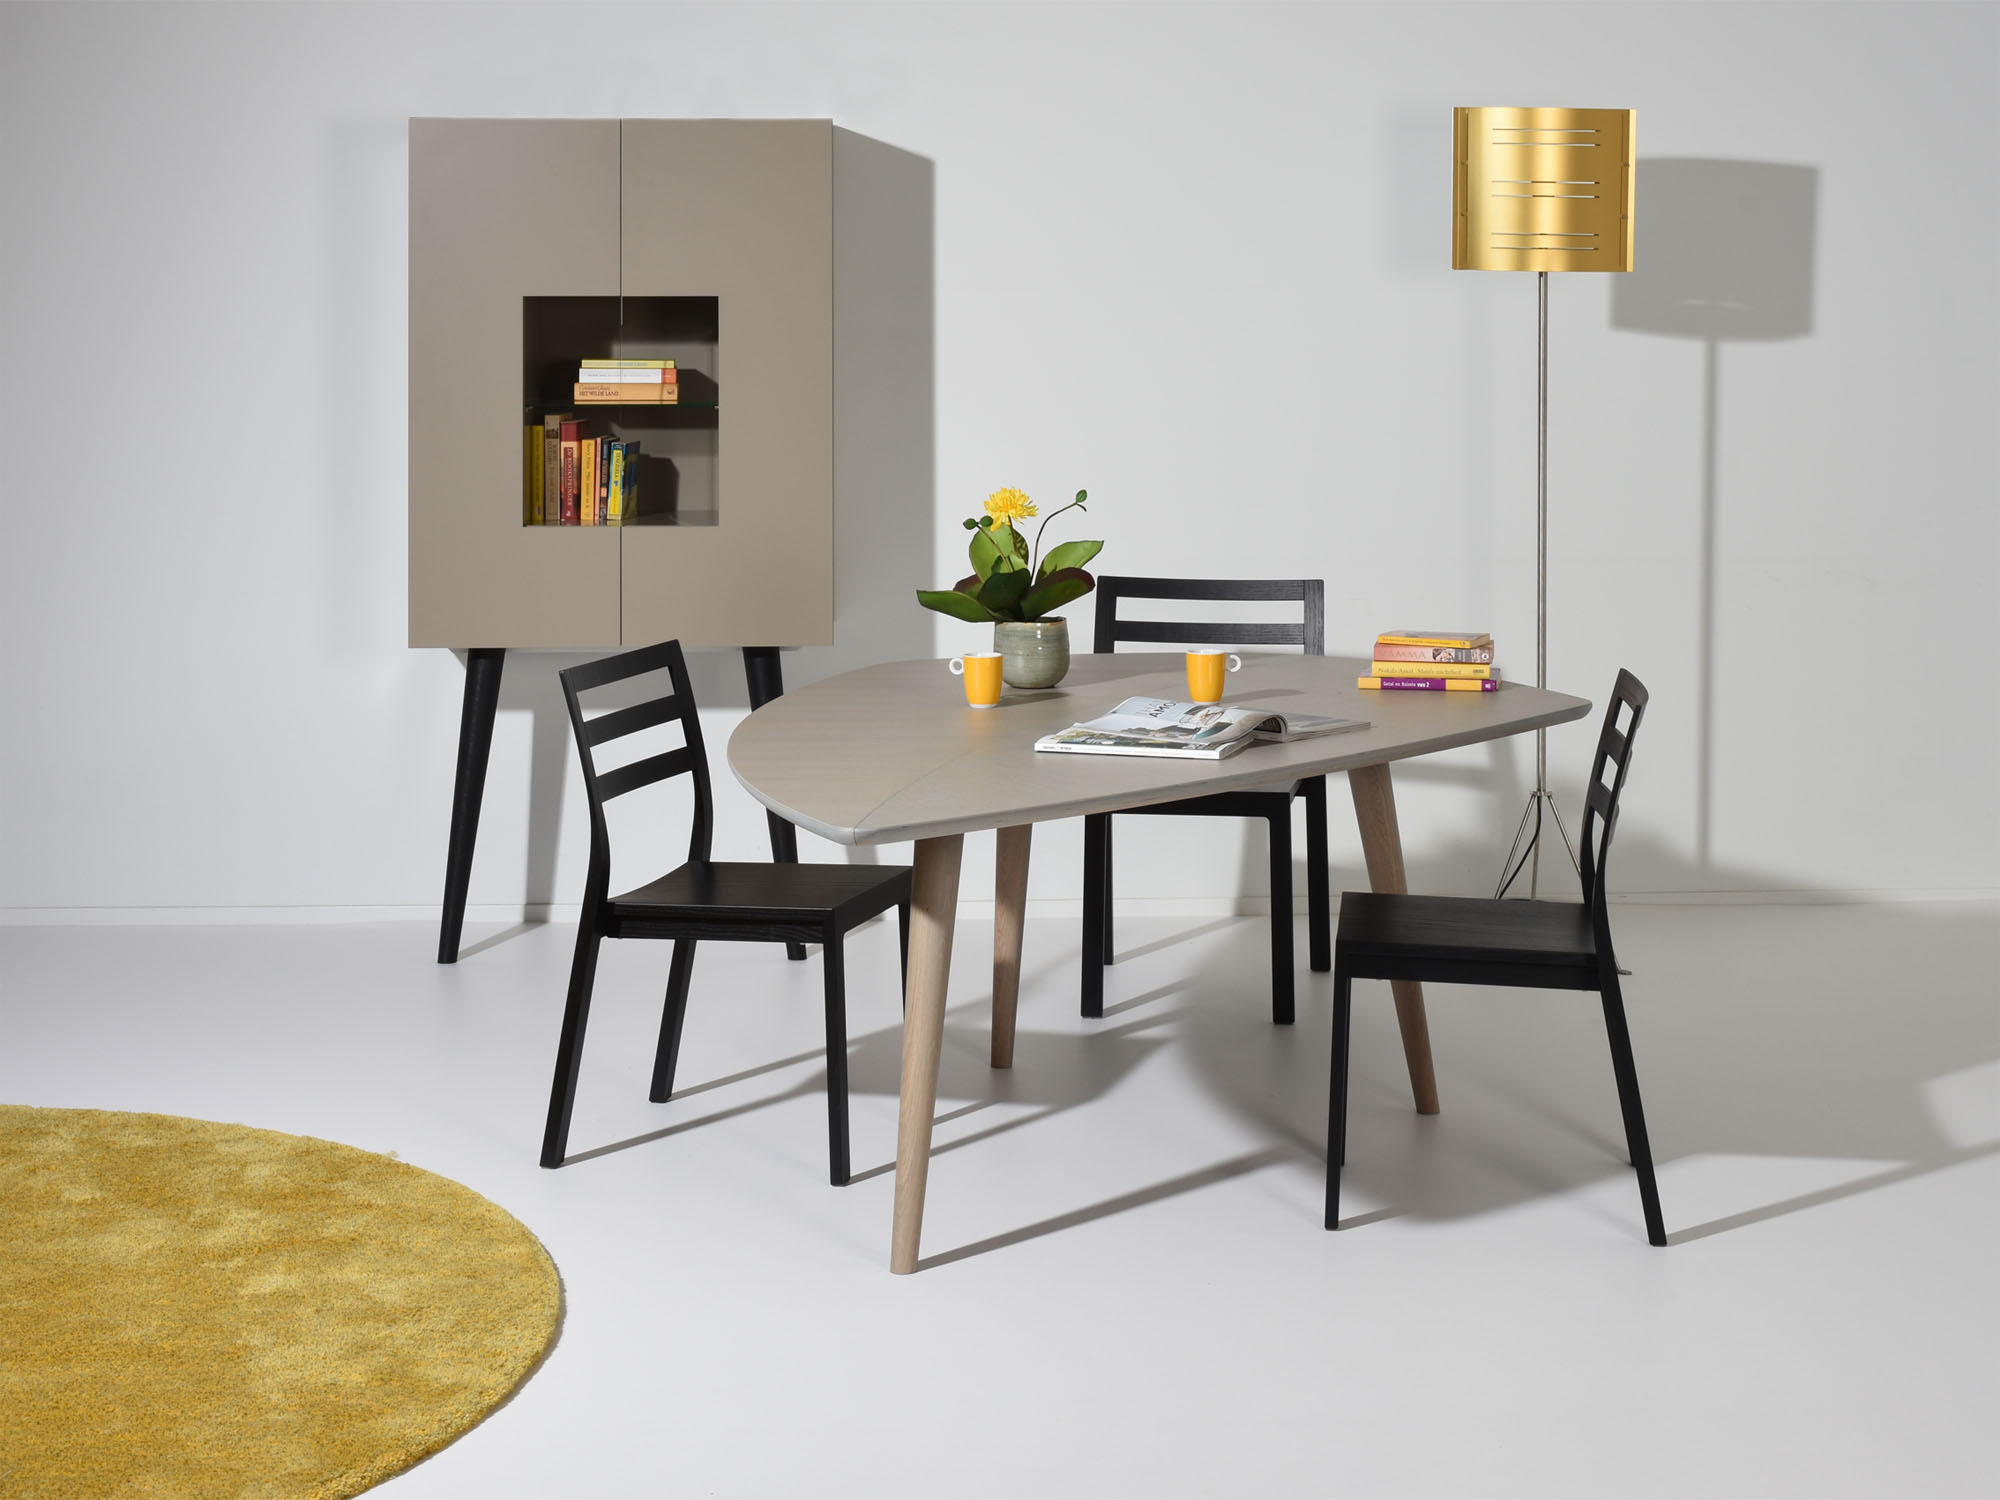 RP-leunkast en RP-tafel, ontwerp door Coen Castelijn